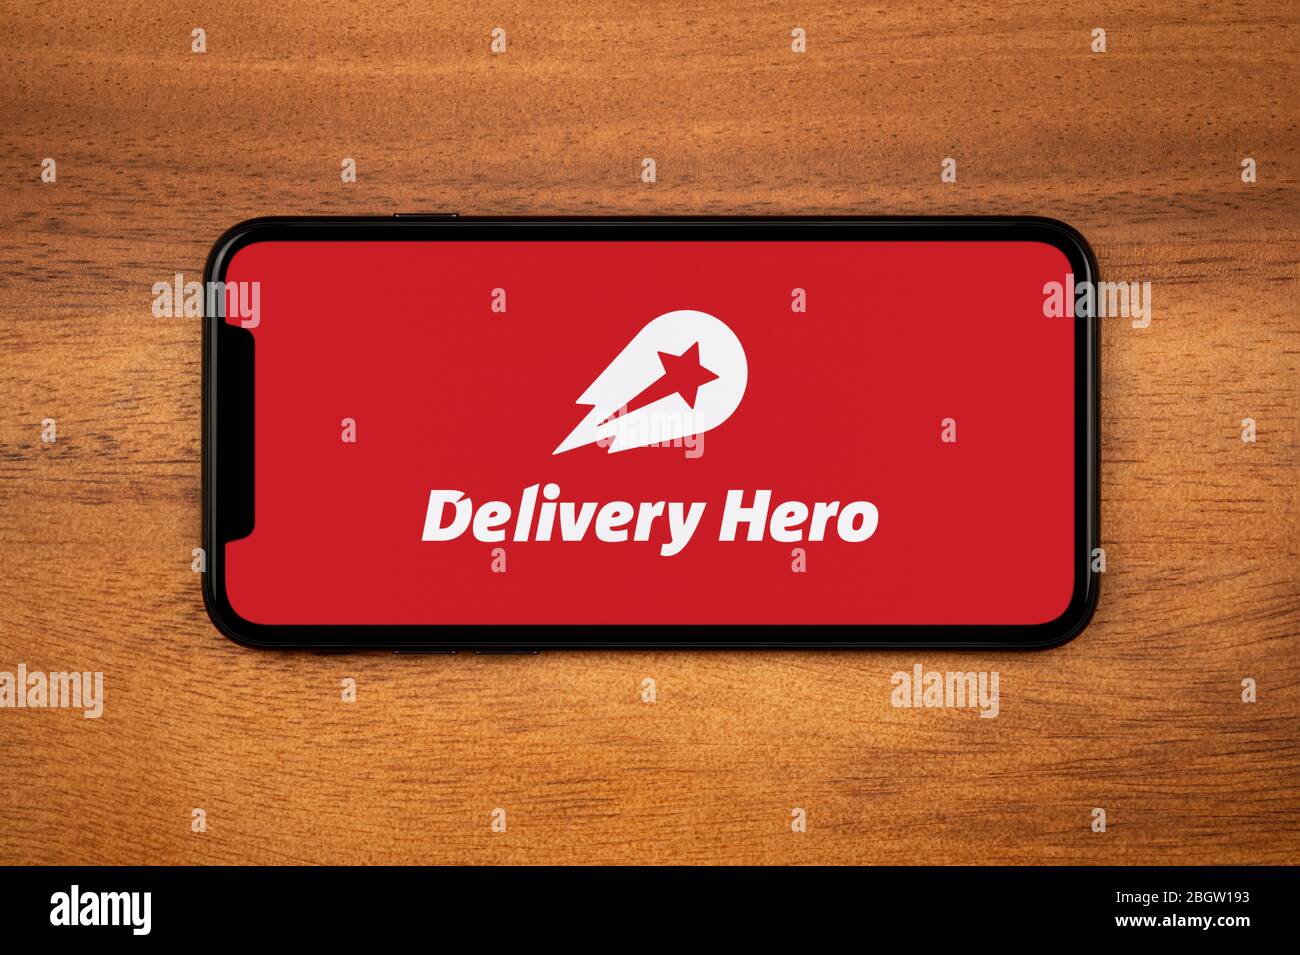 Un smartphone que muestra el logotipo de Delivery Hero descansa sobre una mesa de madera plana (sólo para uso editorial). Foto de stock